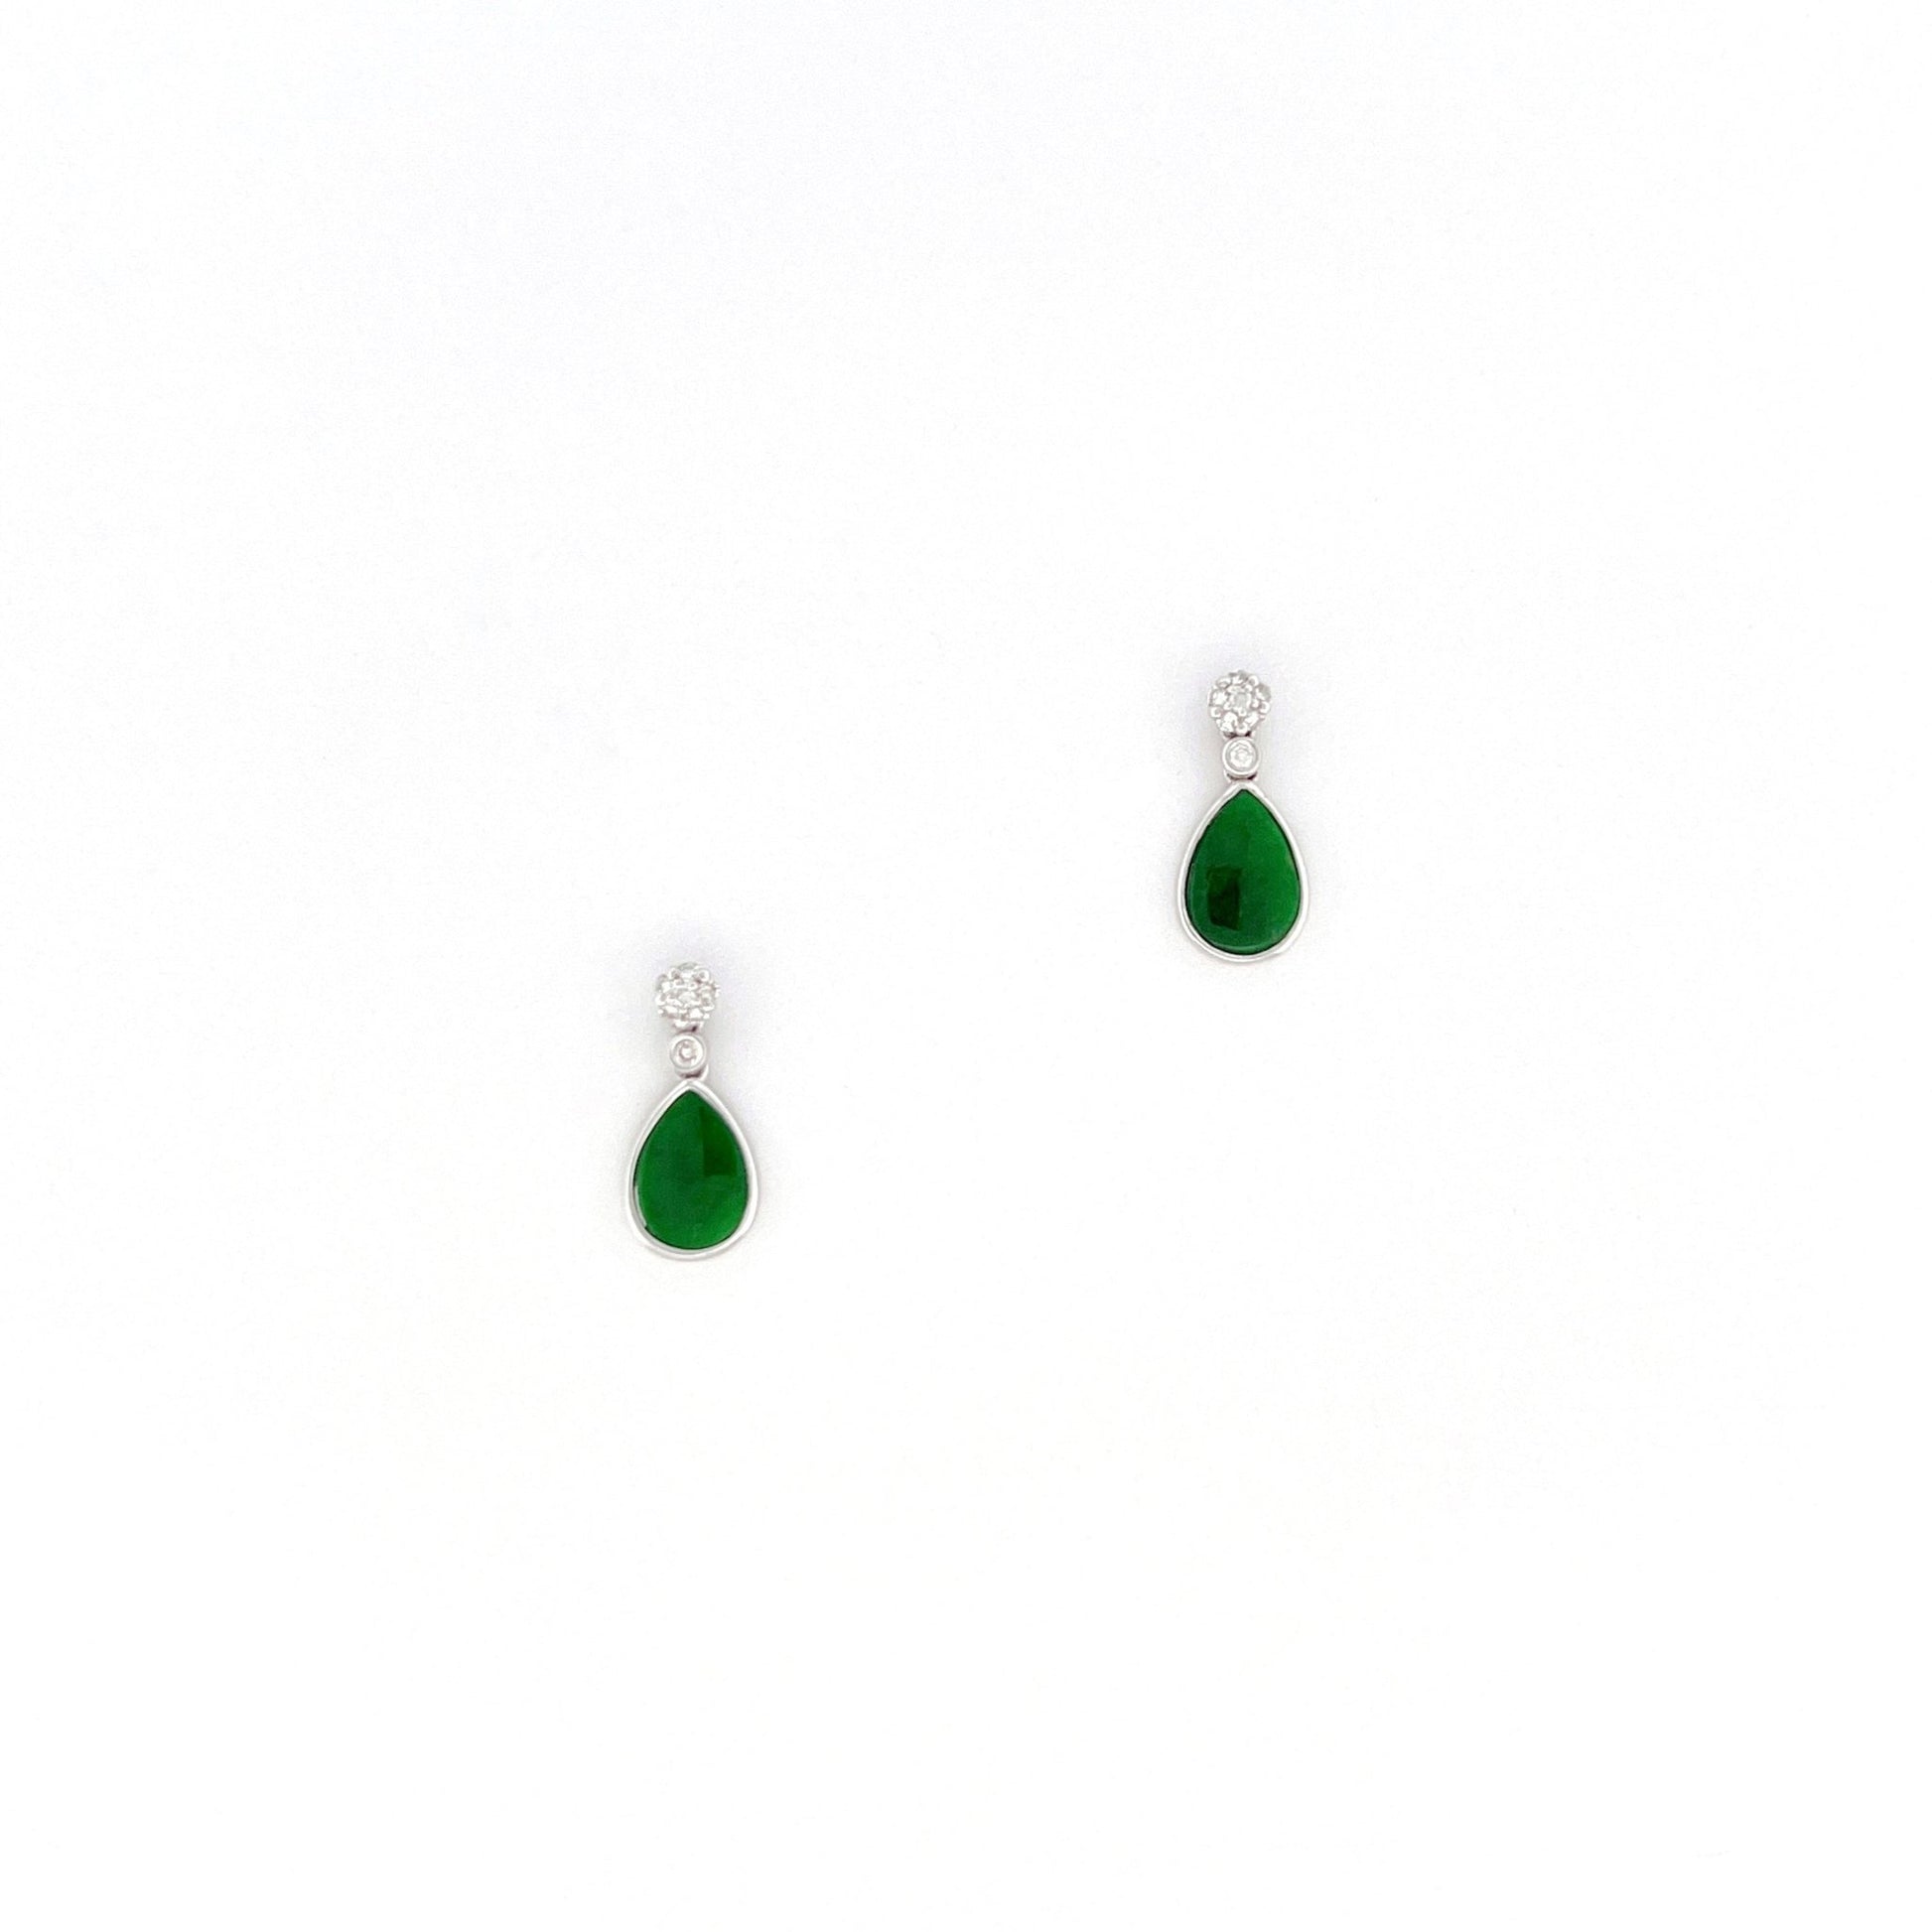 耳環 - 花青深綠色水滴形天然翡翠配鑽石拼花18K白色金耳環 - 雅玉珠寶